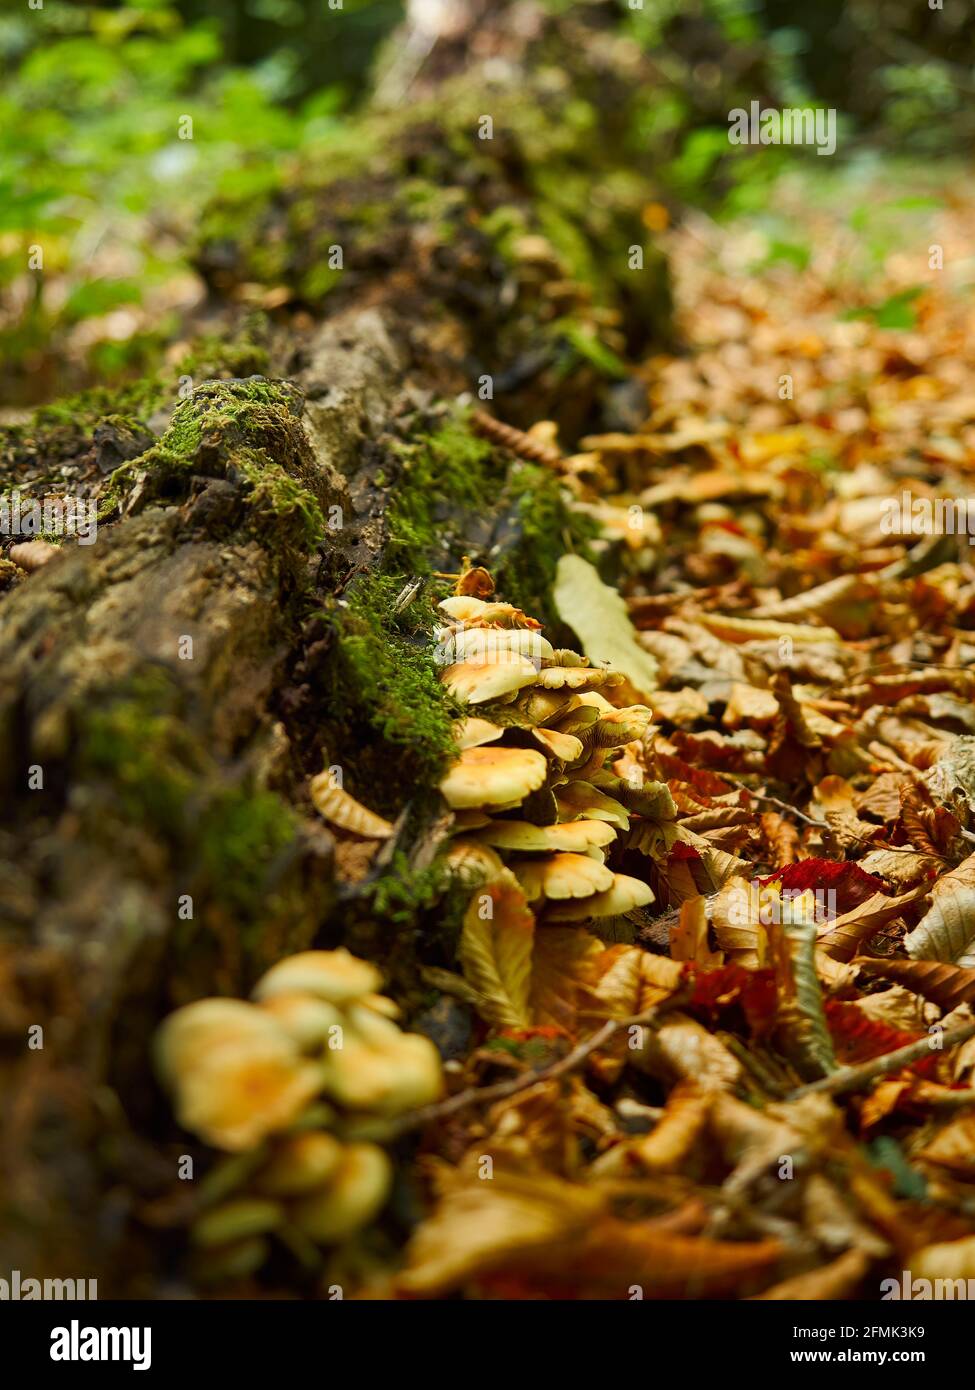 Un parche de bosque urbano alberga algún hongo de miel unido a un tronco caído cubierto de musgo en una profunda pila de basura otoñal. Foto de stock